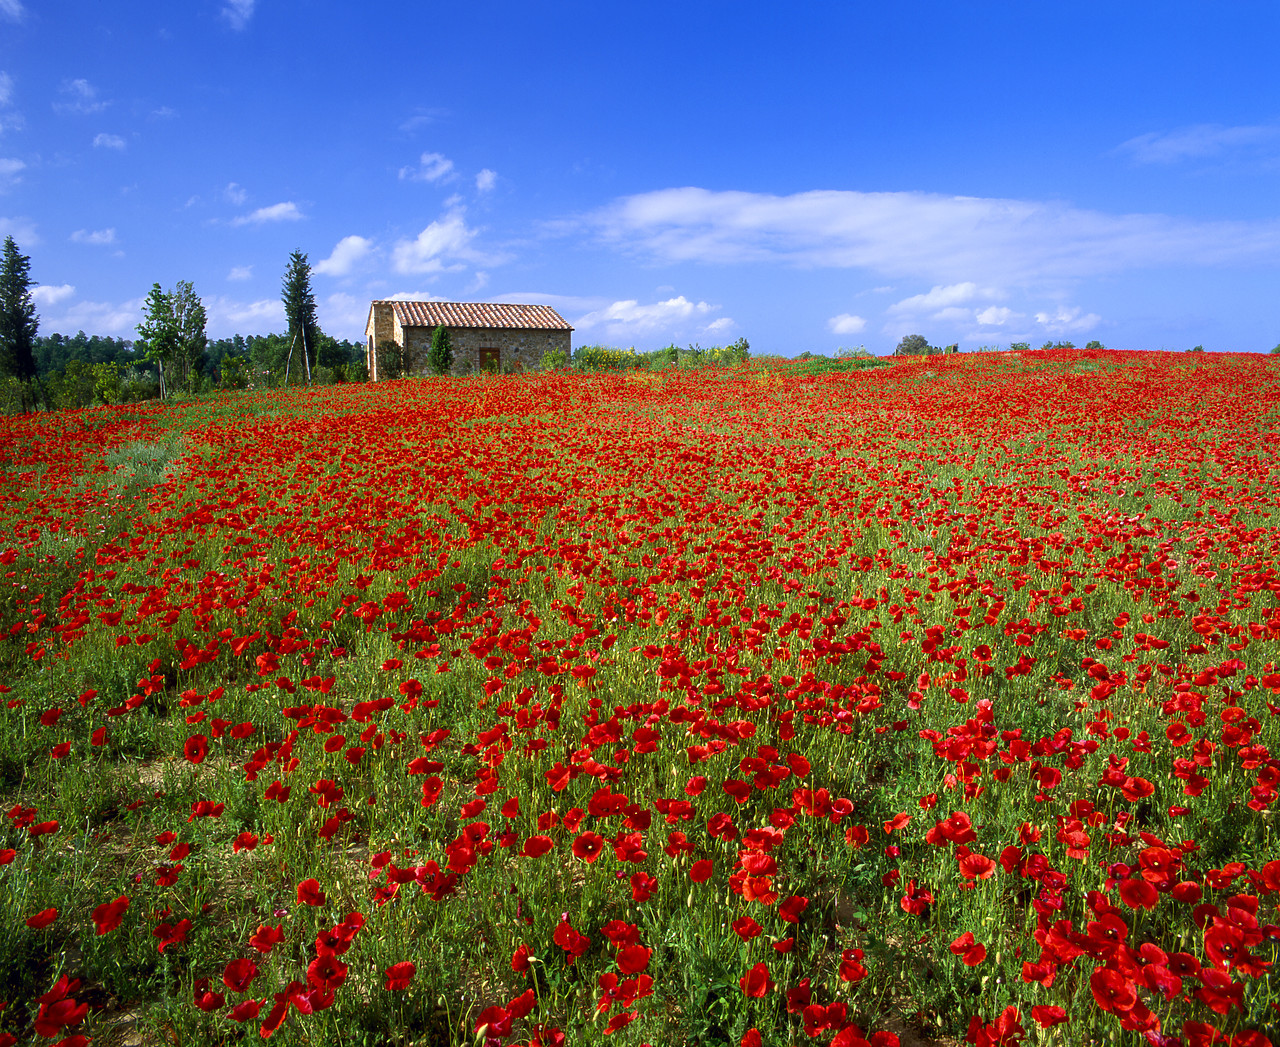 #020116-1 - Villa in Field of Poppies, Tuscany, Italy